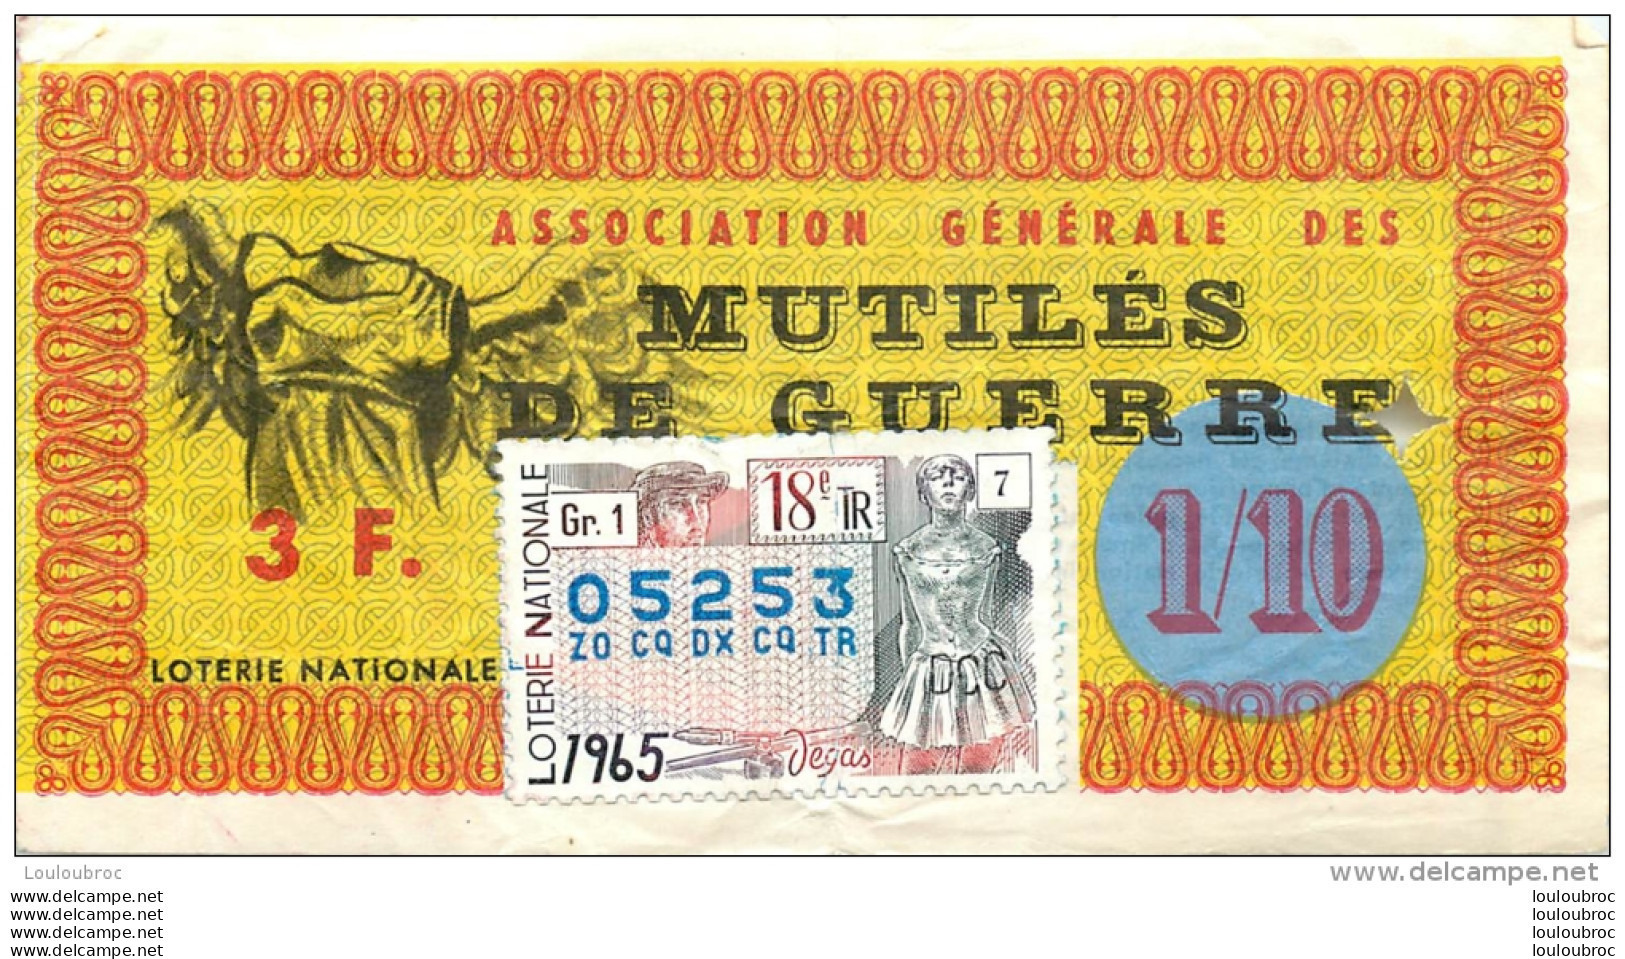 BILLET DE LOTERIE NATIONALE 1965 ASSOCIATION GENERALE DES MUTILES DE GUERRE - Lotterielose